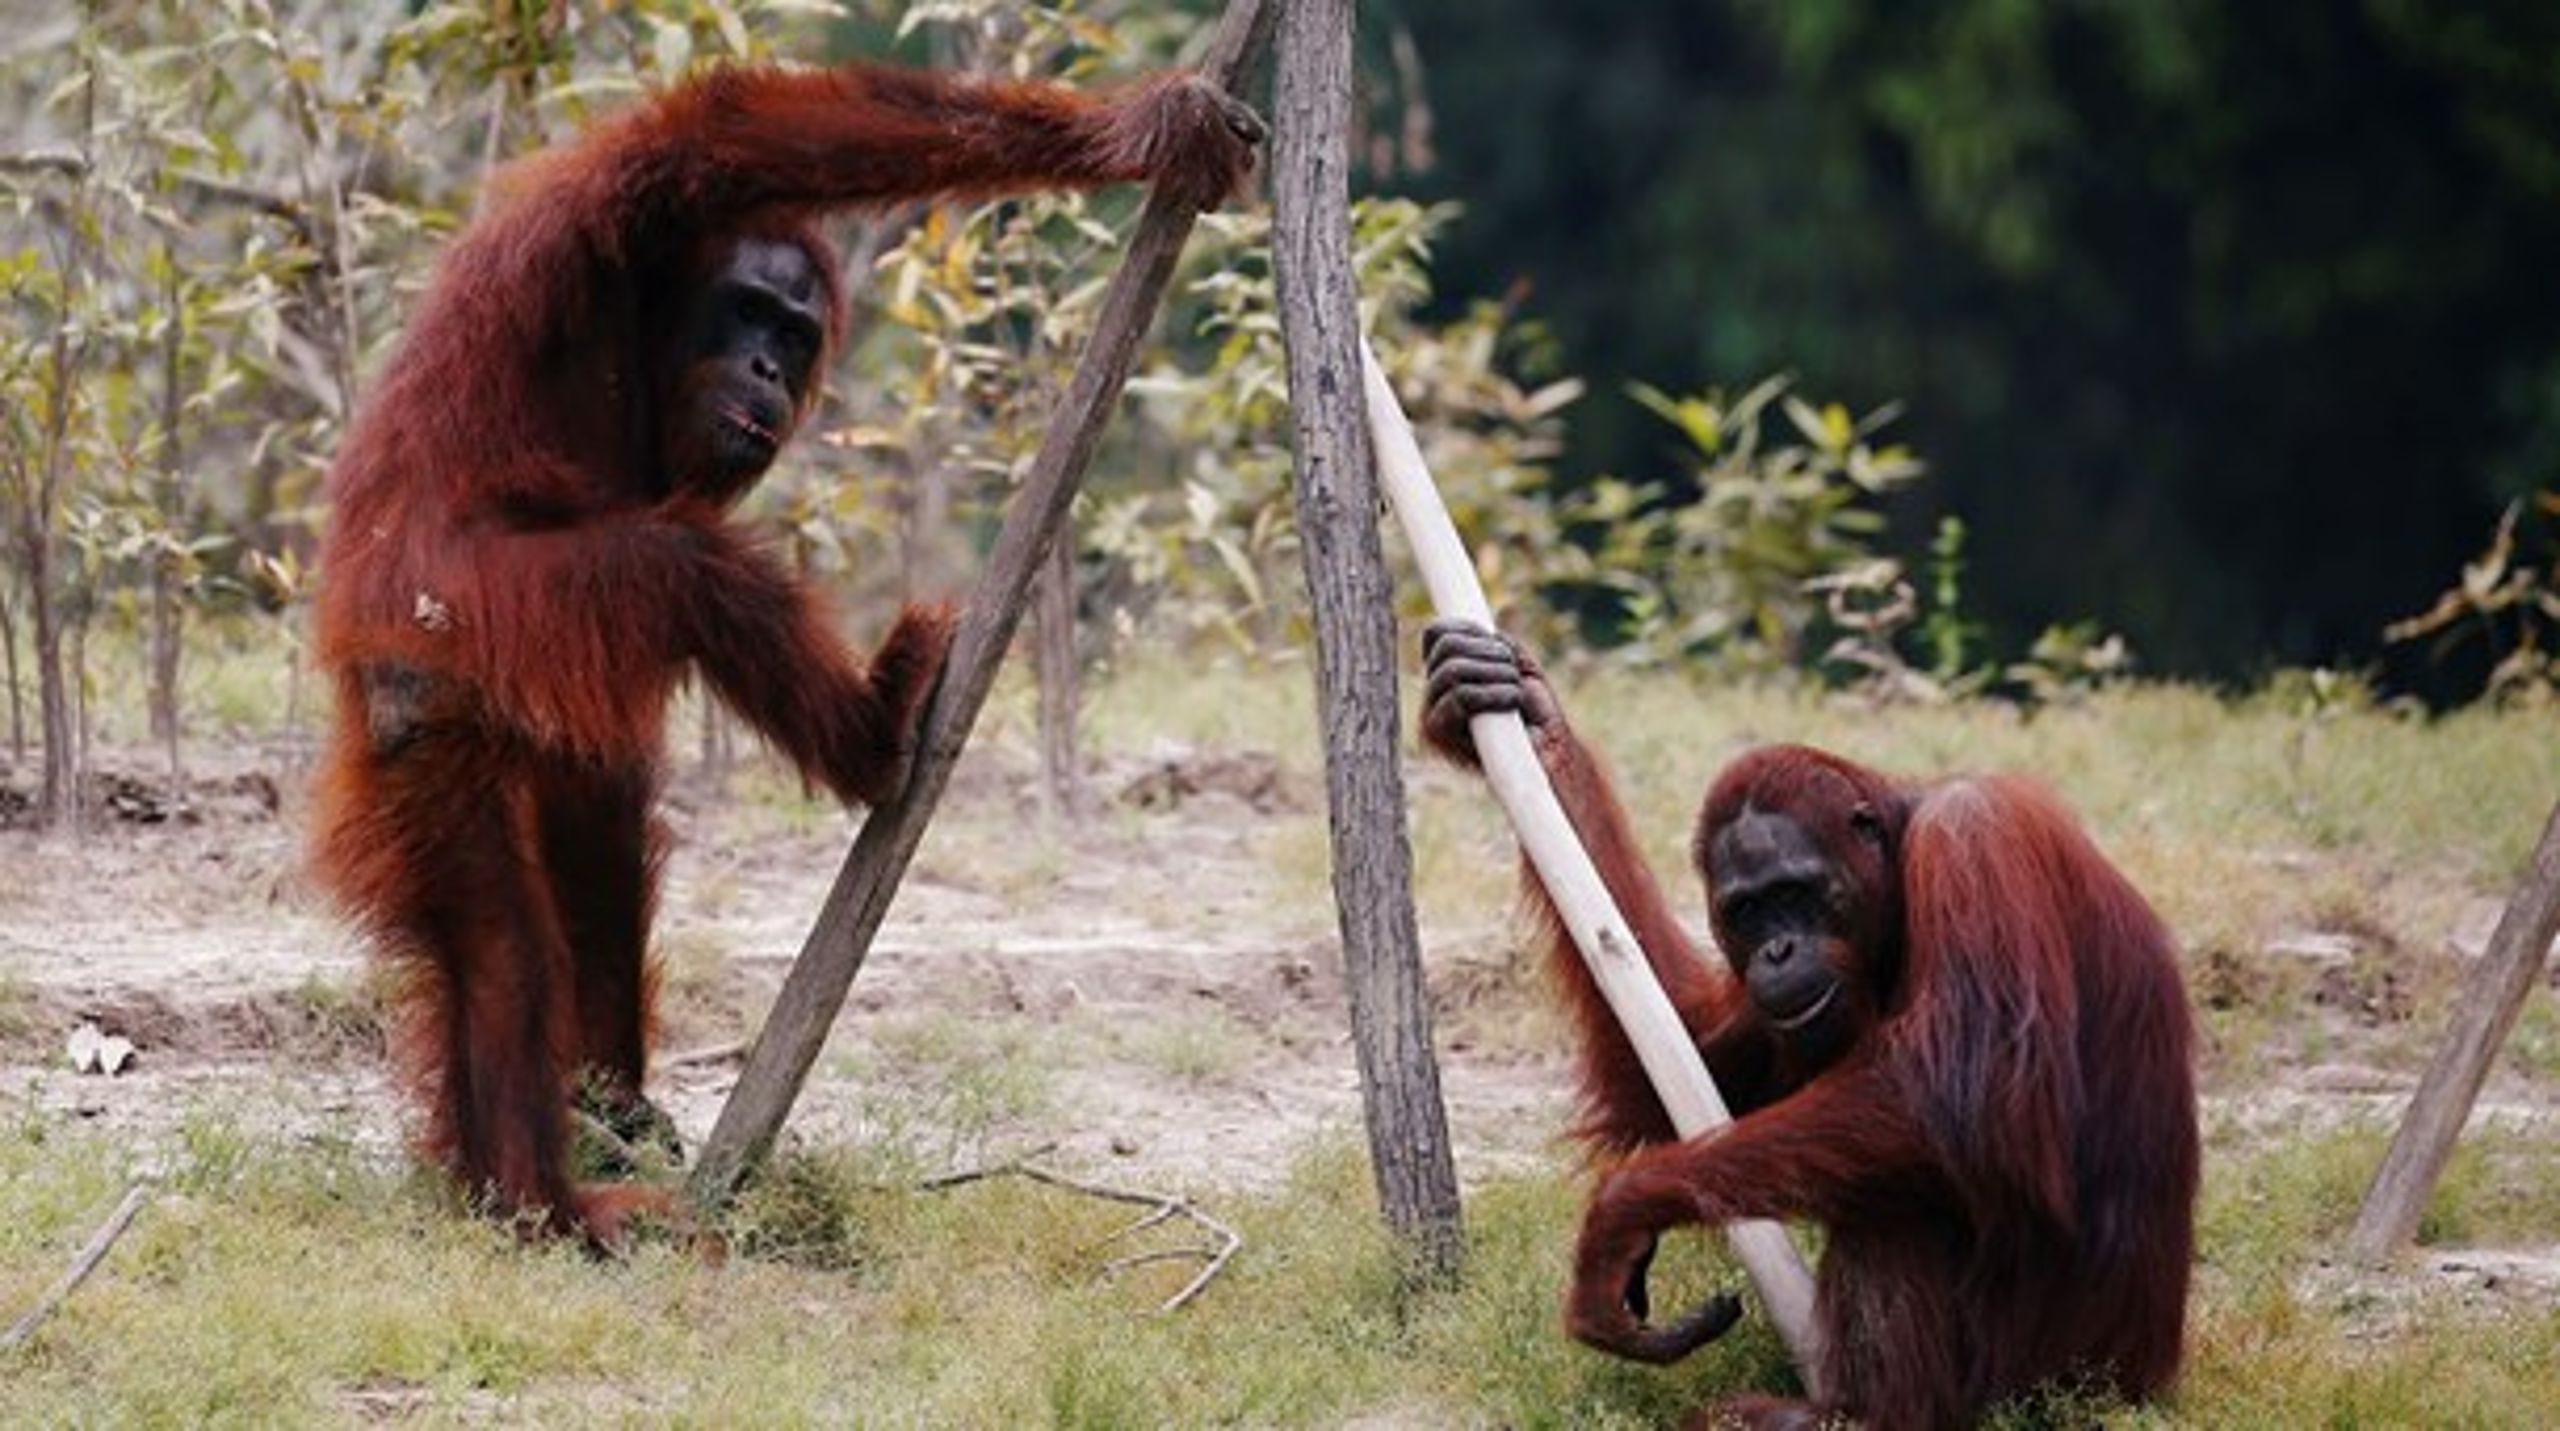 Op mod 80 procent af orangutangens levesteder i Indonesien og Malaysia er gået tabt de seneste fire årtier. Beskyttelse af naturen er altafgørende,&nbsp;skriver Hanne Gürtler.